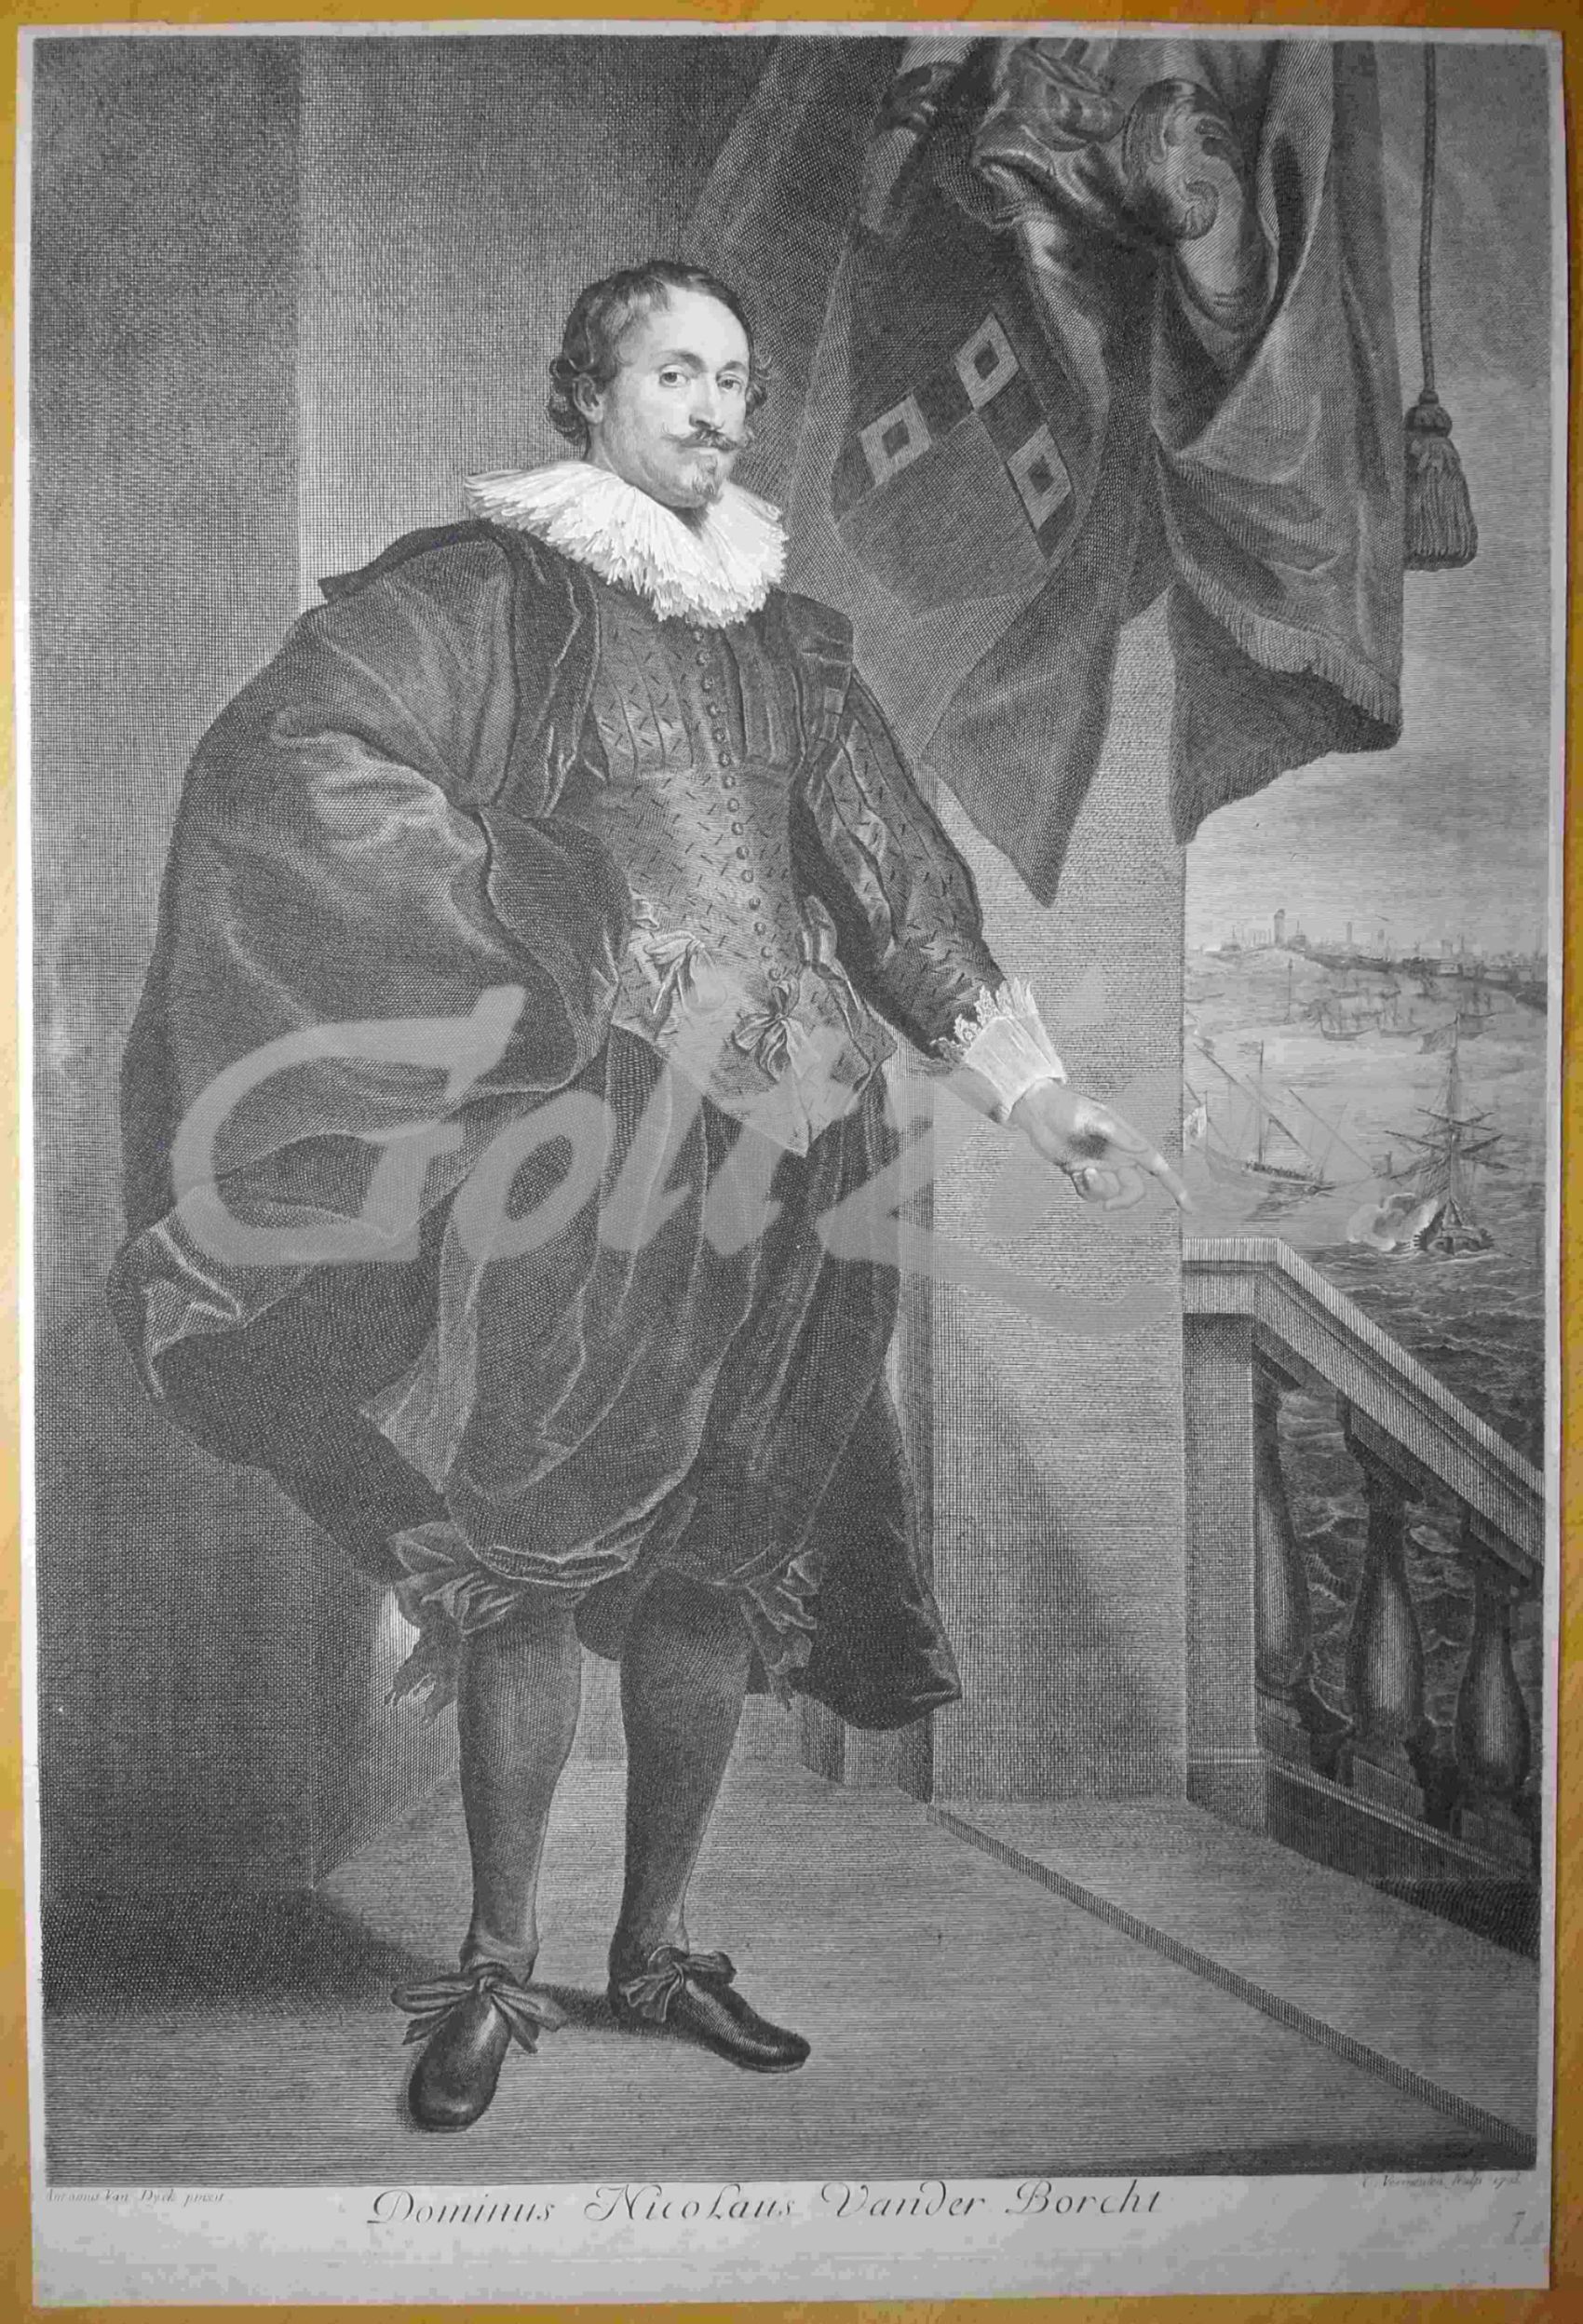 VERMEULEN, CORNELIS, Portrait of Nicolaas van der Borcht